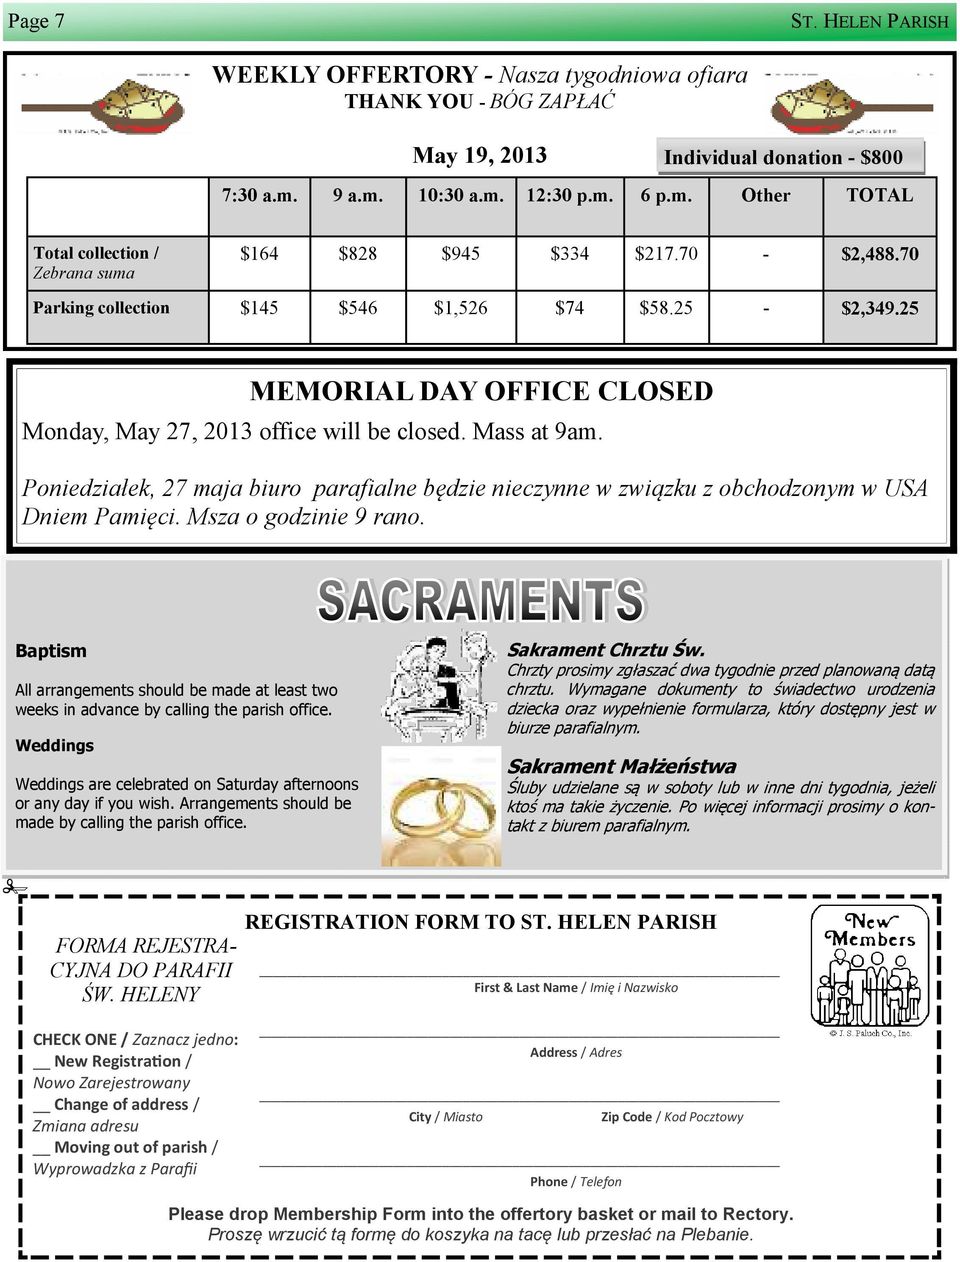 25 MEMORIAL DAY OFFICE CLOSED Monday, May 27, 2013 office will be closed. Mass at 9am. Poniedziałek, 27 maja biuro parafialne będzie nieczynne w zwi zku z obchodzonym w USA Dniem Pamięci.